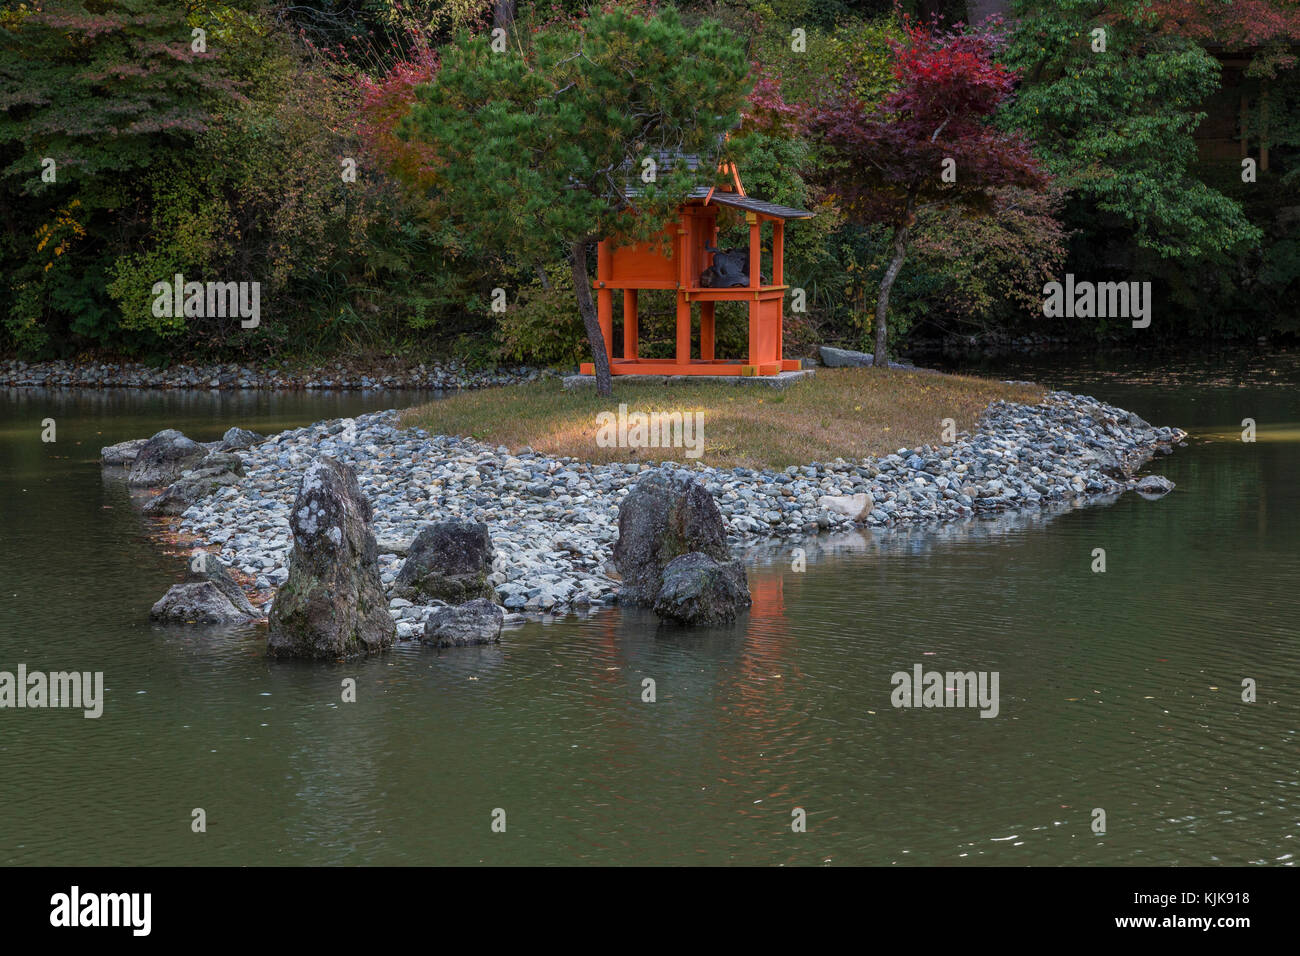 Joruri-ji se encuentra idealmente ubicado en las colinas de Nara y la única existente era Heian Amida Hall con nueve imágenes de amida y los nueve niveles de Foto de stock